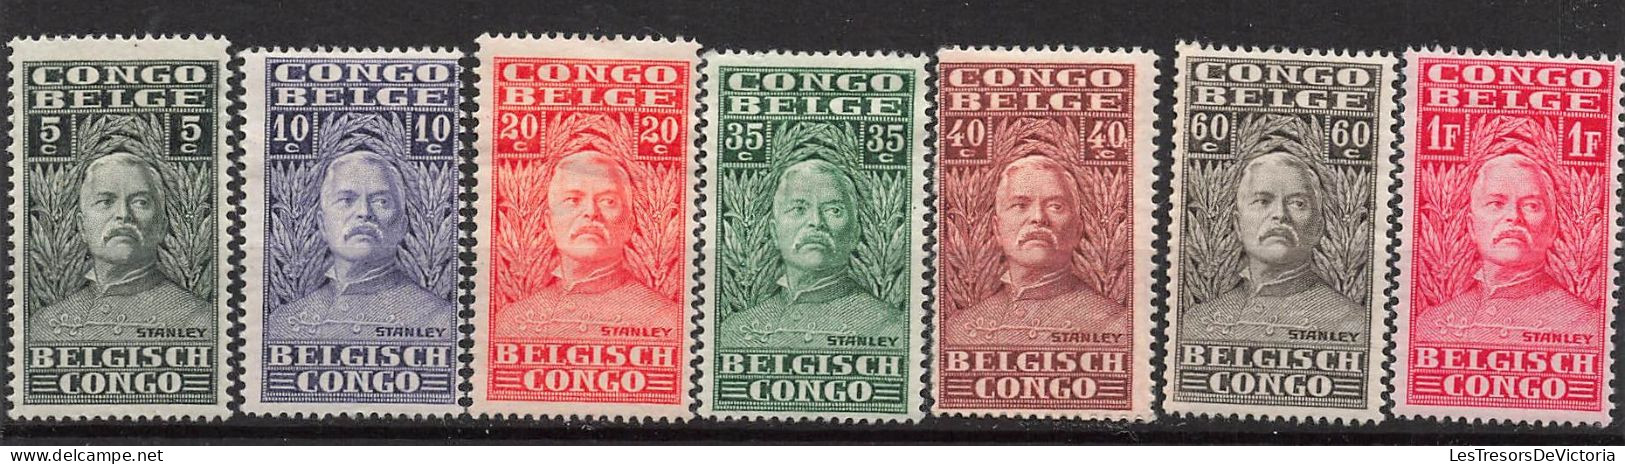 Timbre - Congo Belge - 1928 - COB135/49* - Explorateur Henri Morton Stanley - Cote 50 - Nuovi